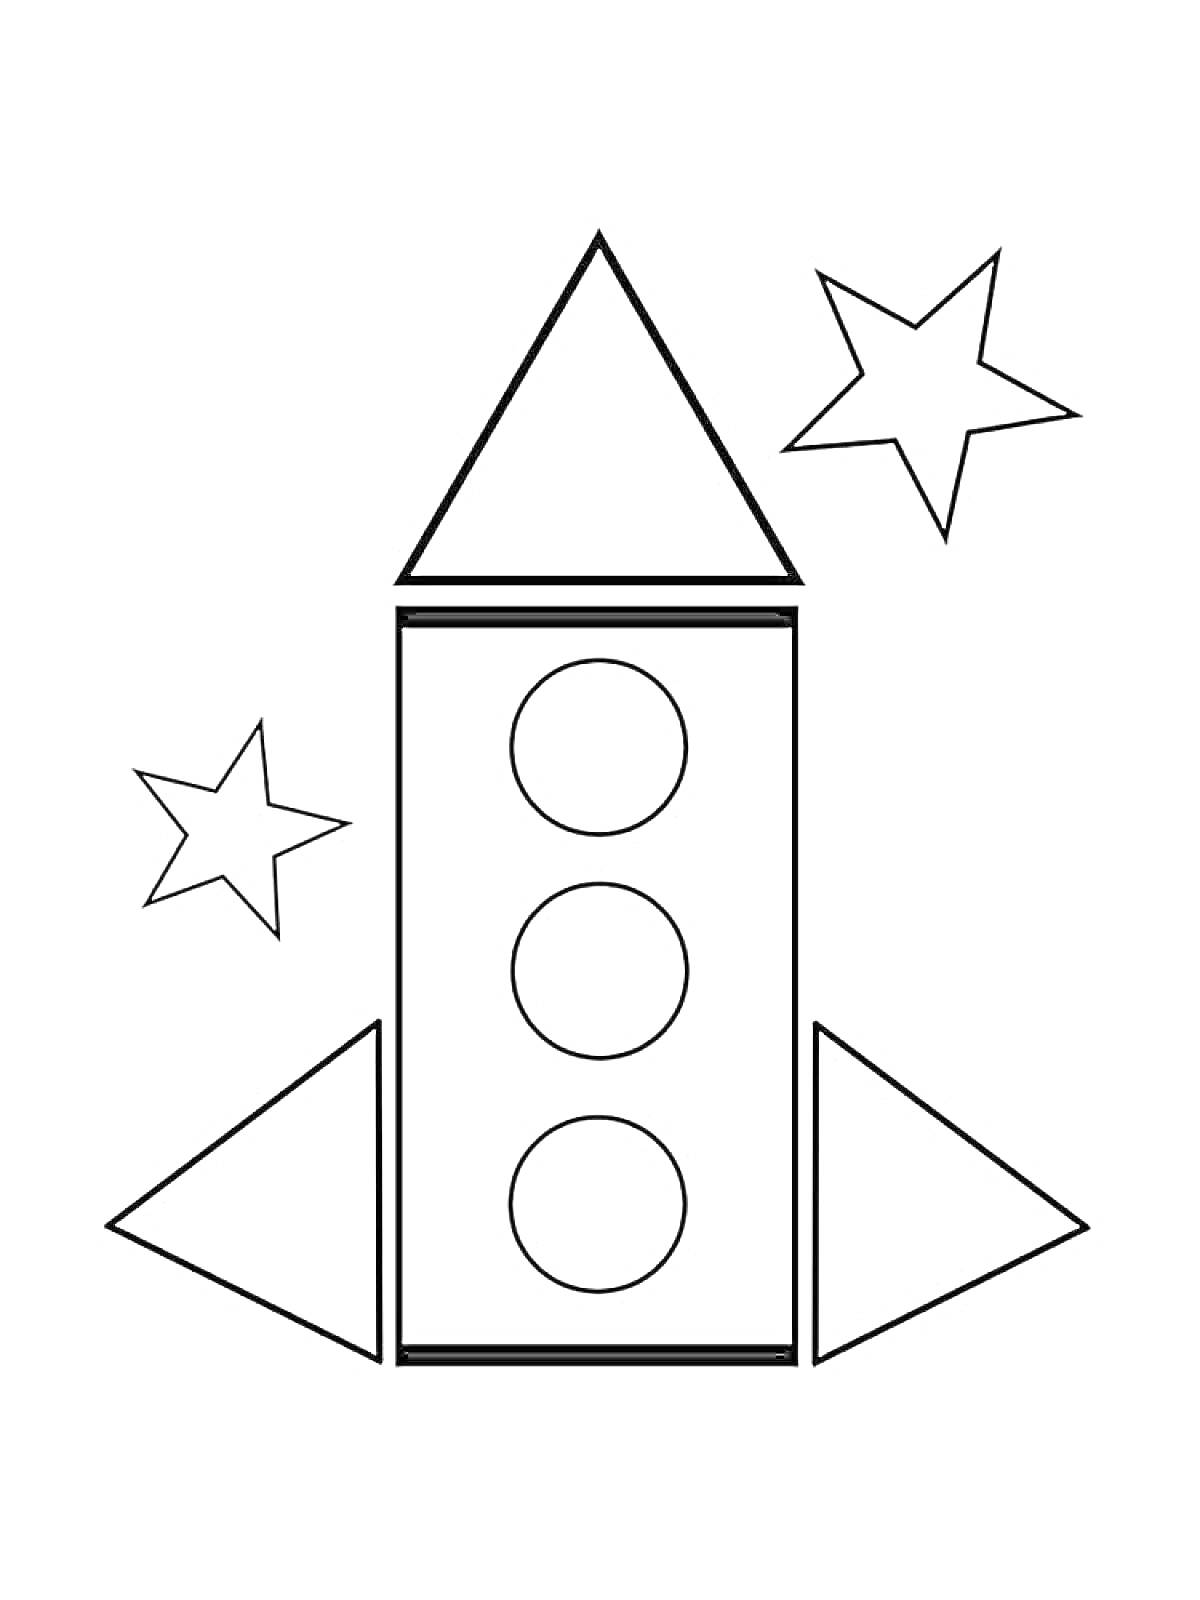 Раскраска Ракета с тремя кругами, двумя звездами и четырьмя треугольниками